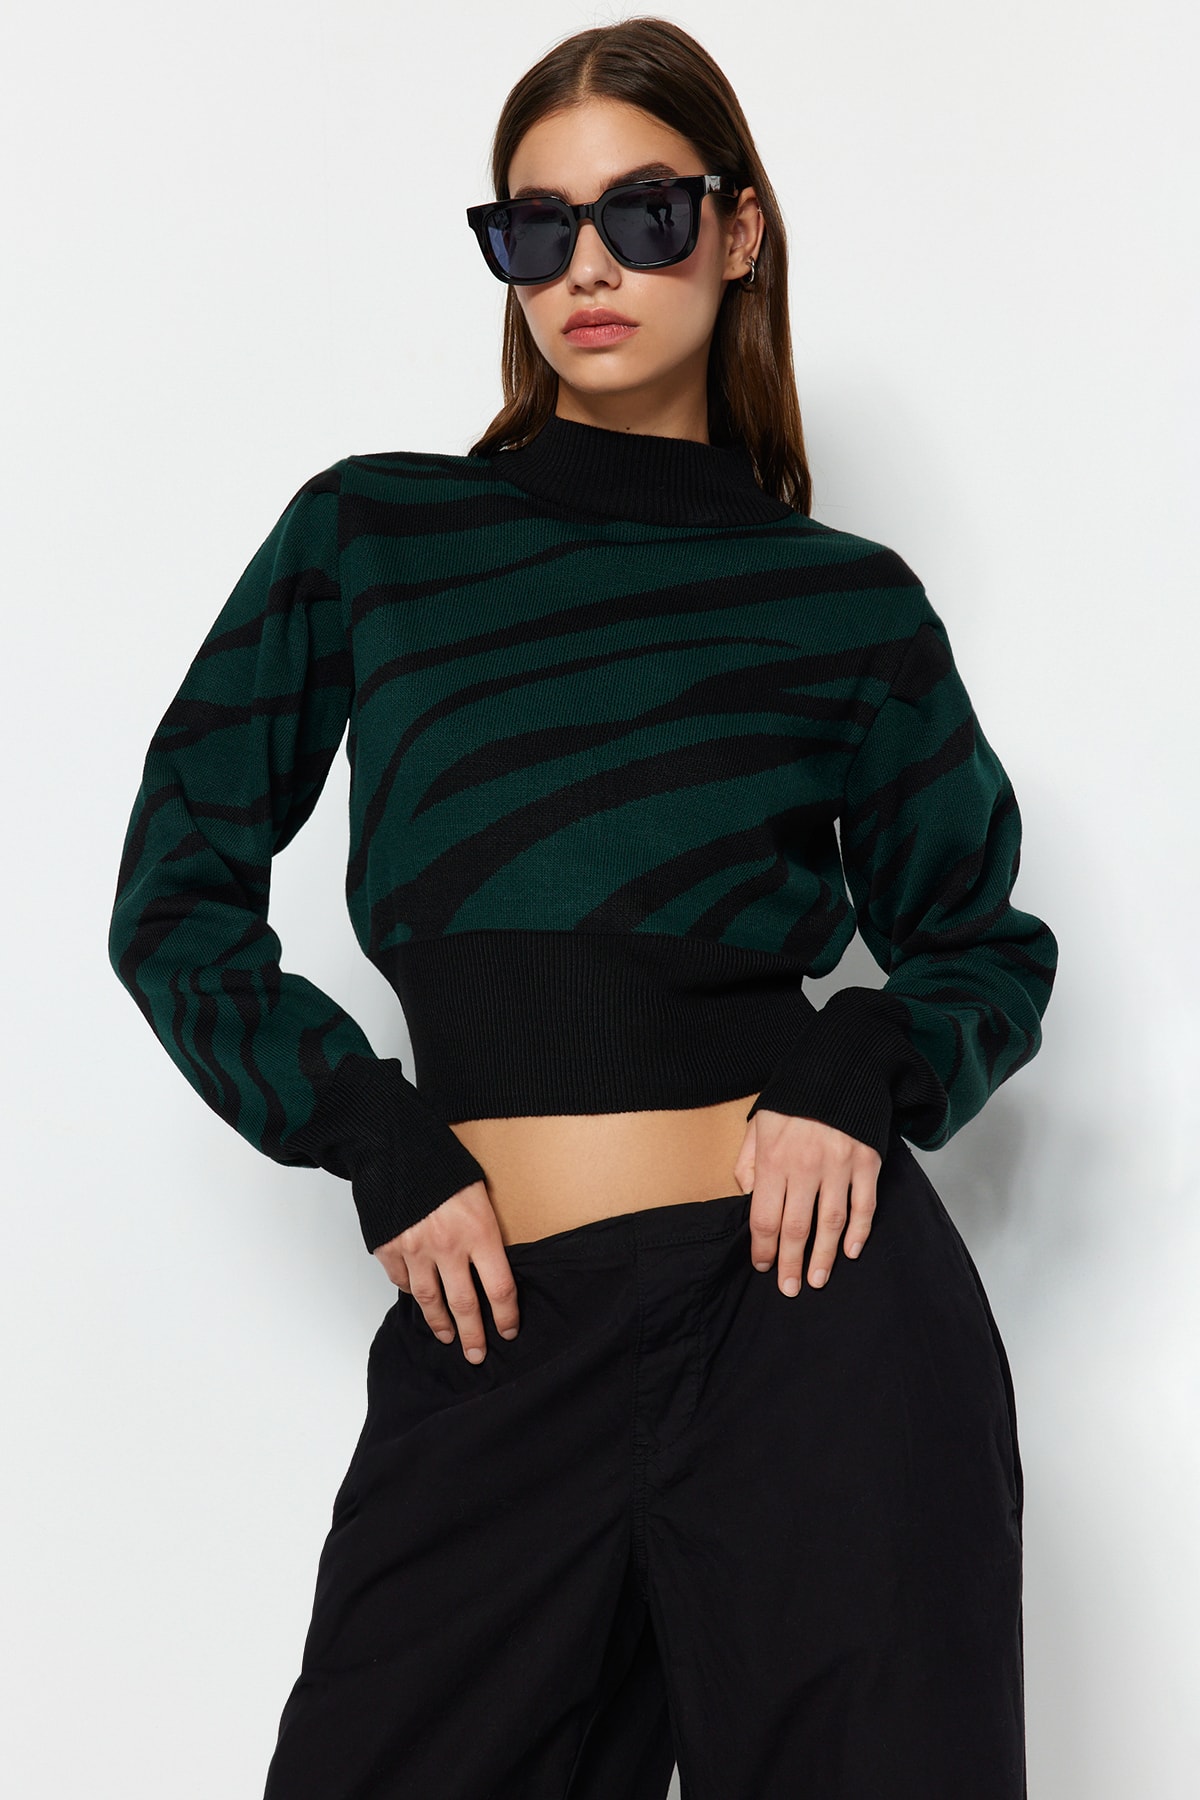 Trendyol Emerald Green High Neck Knitwear Sweater